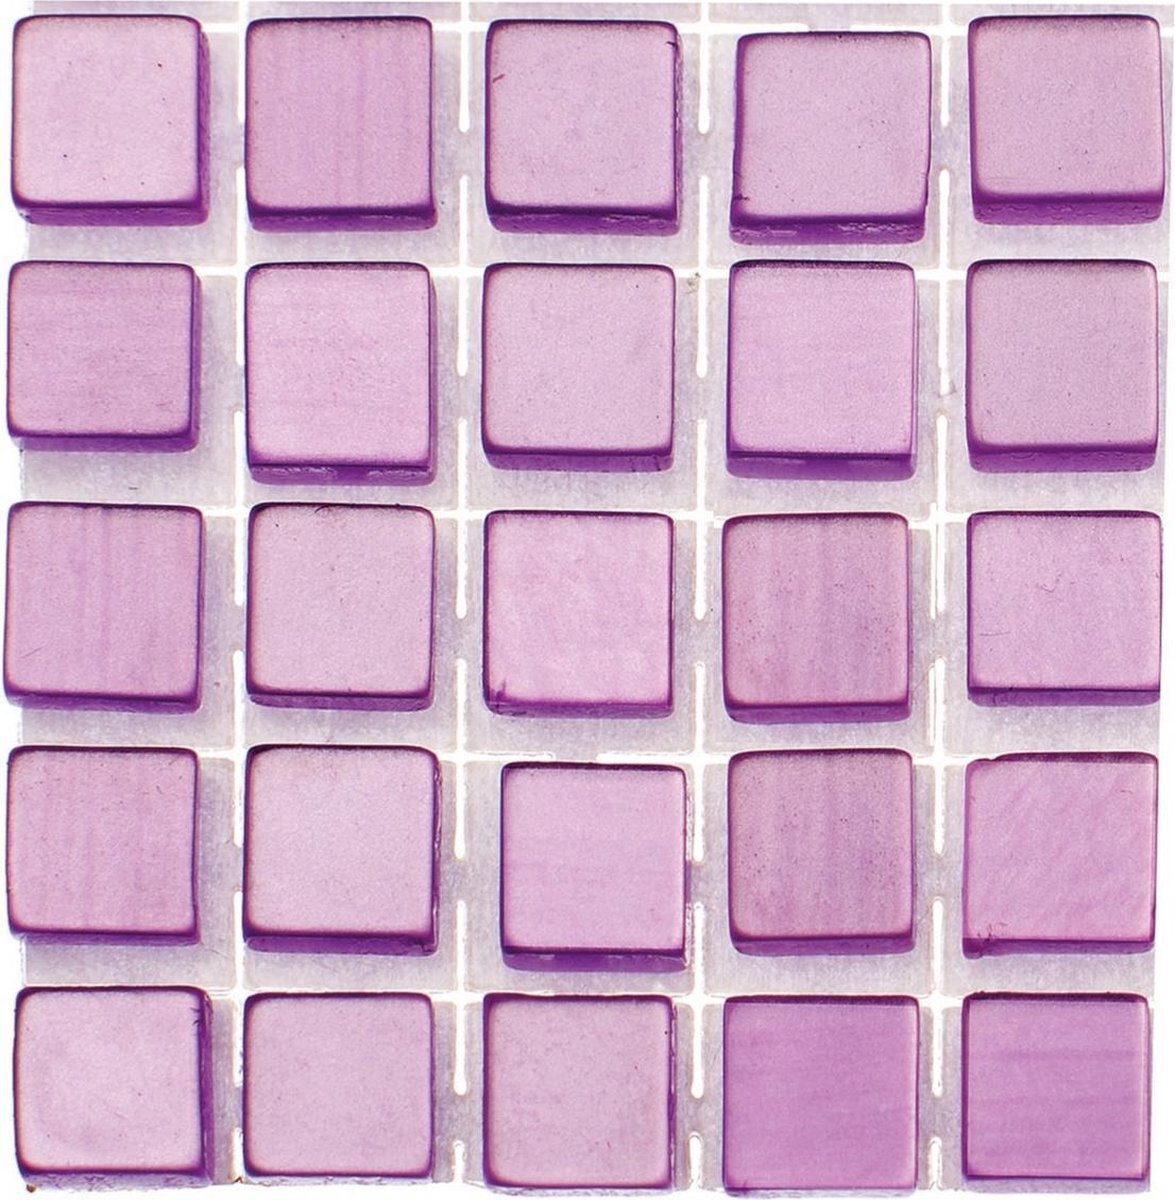 Glorex Hobby 476x stuks mozaieken maken steentjes/tegels kleur lila paars met formaat 5 x 5 x 2 mm